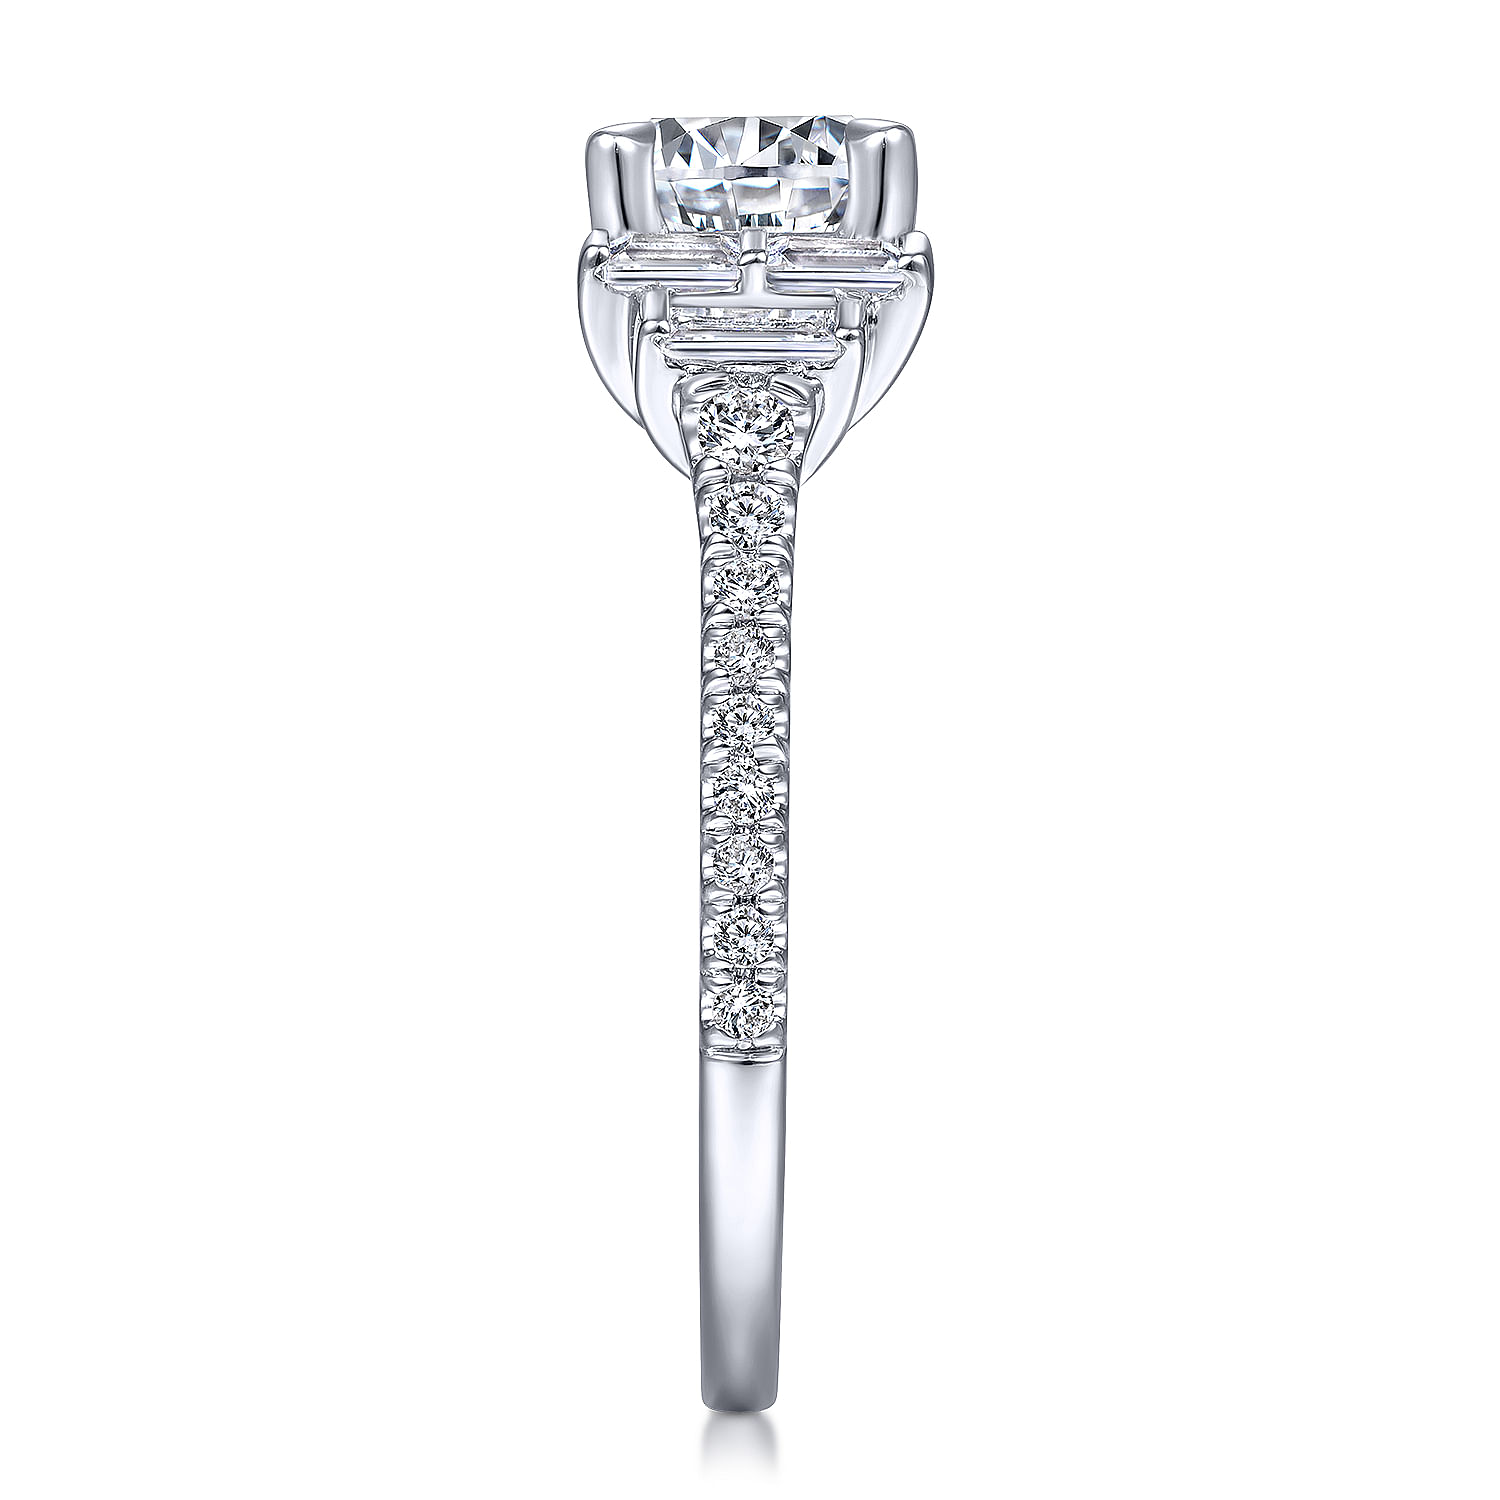 Art Deco 14K White Gold Round Three Stone Diamond Engagement Ring ...